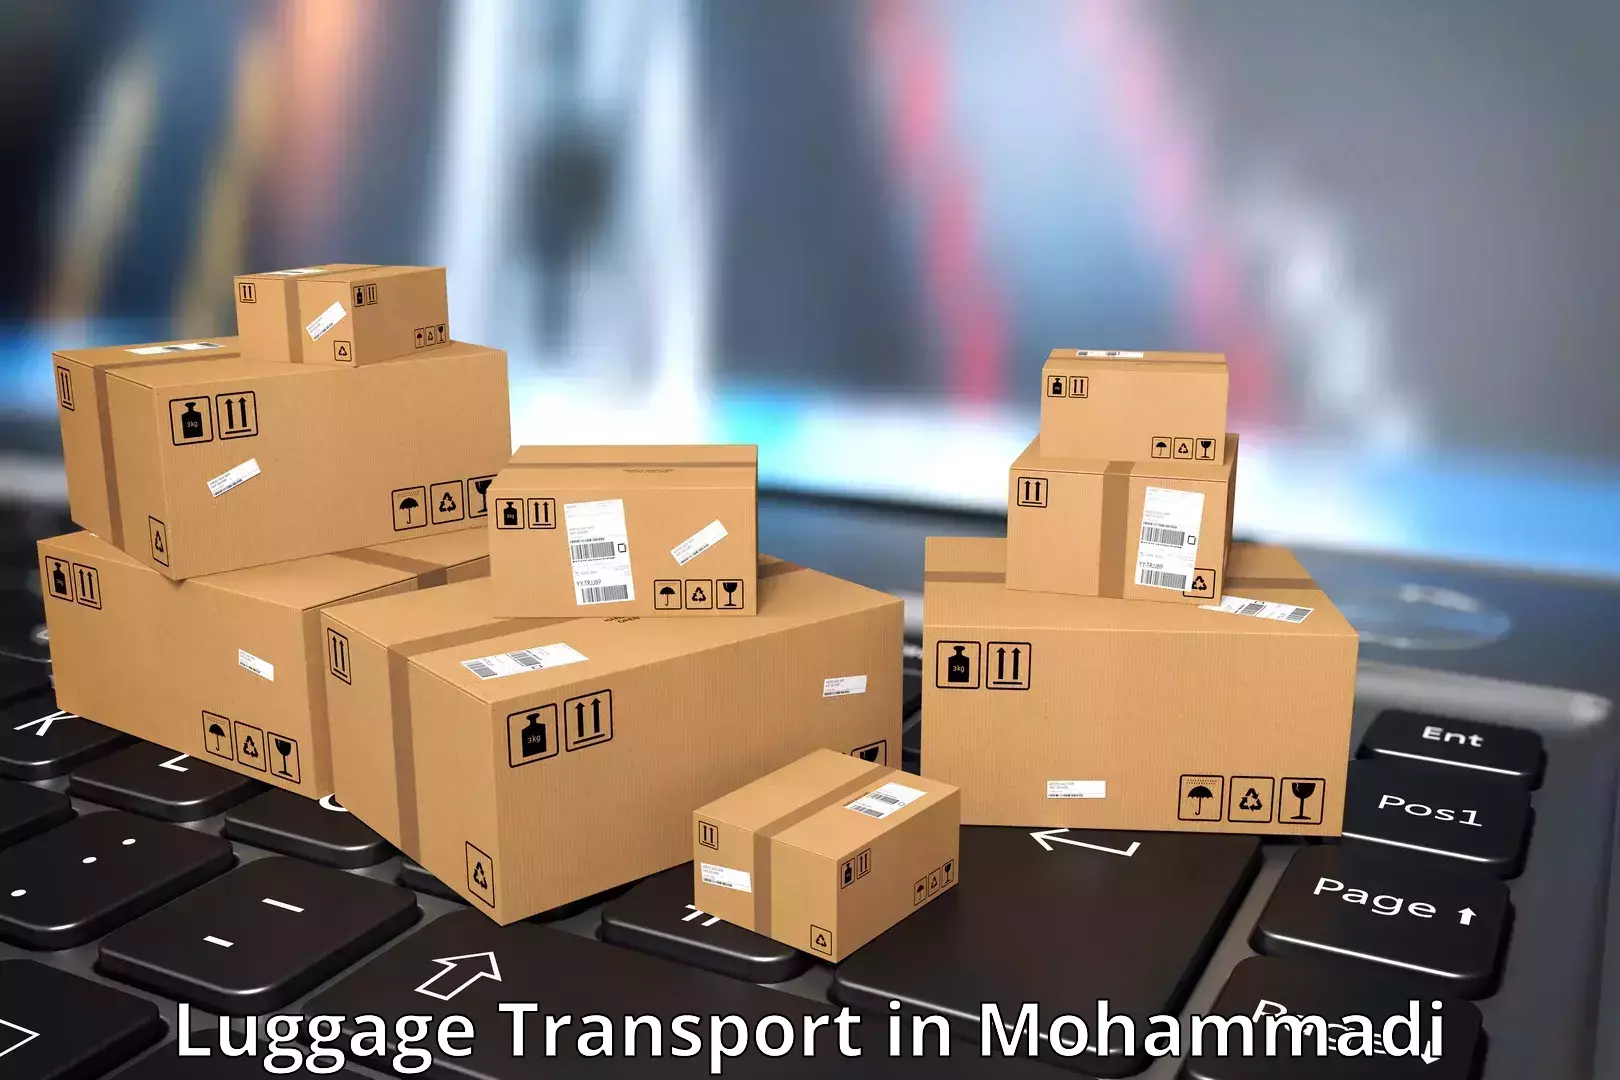 Urban luggage shipping in Mohammadi